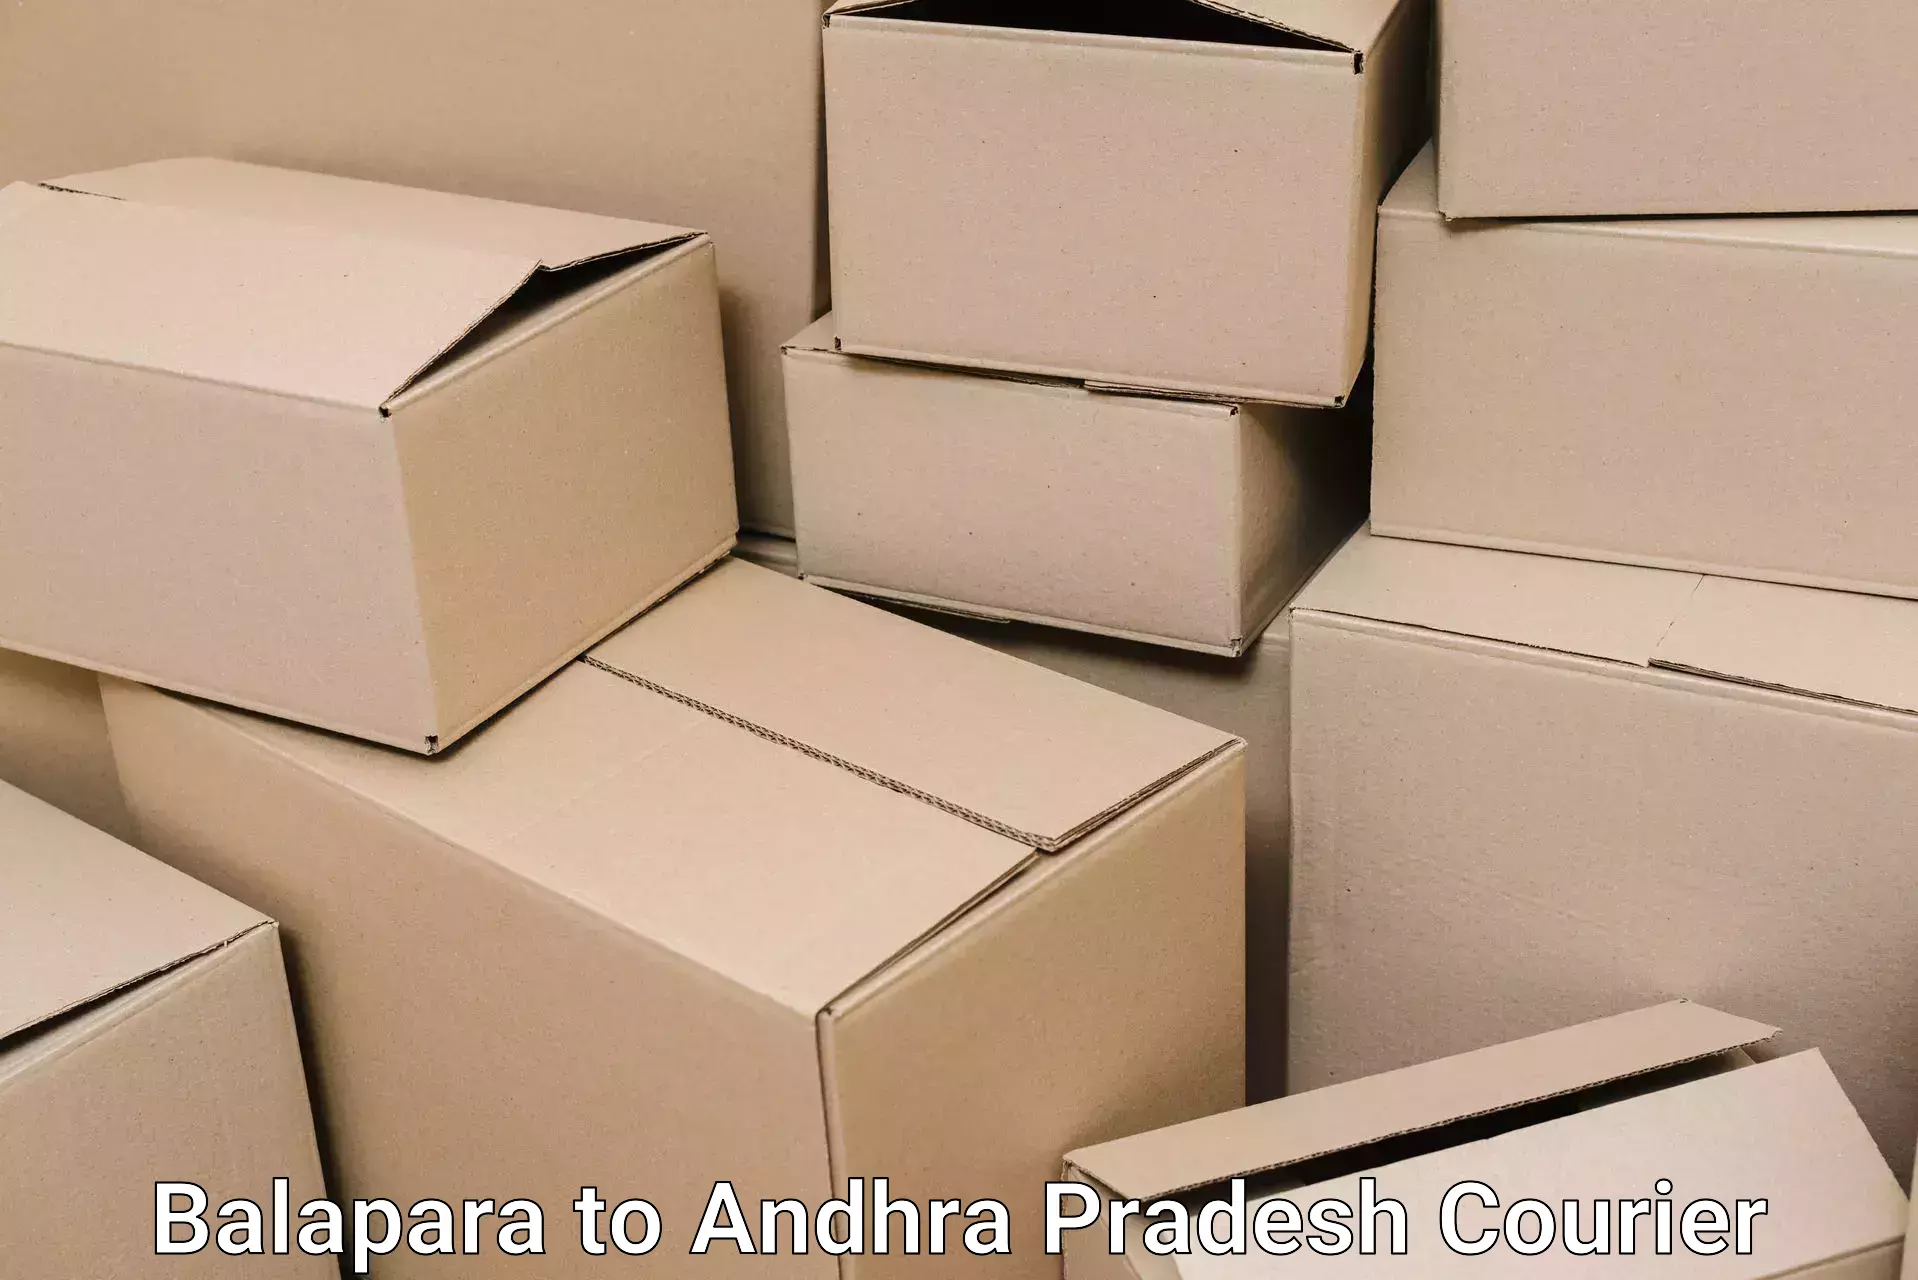 Furniture moving plans Balapara to Andhra Pradesh